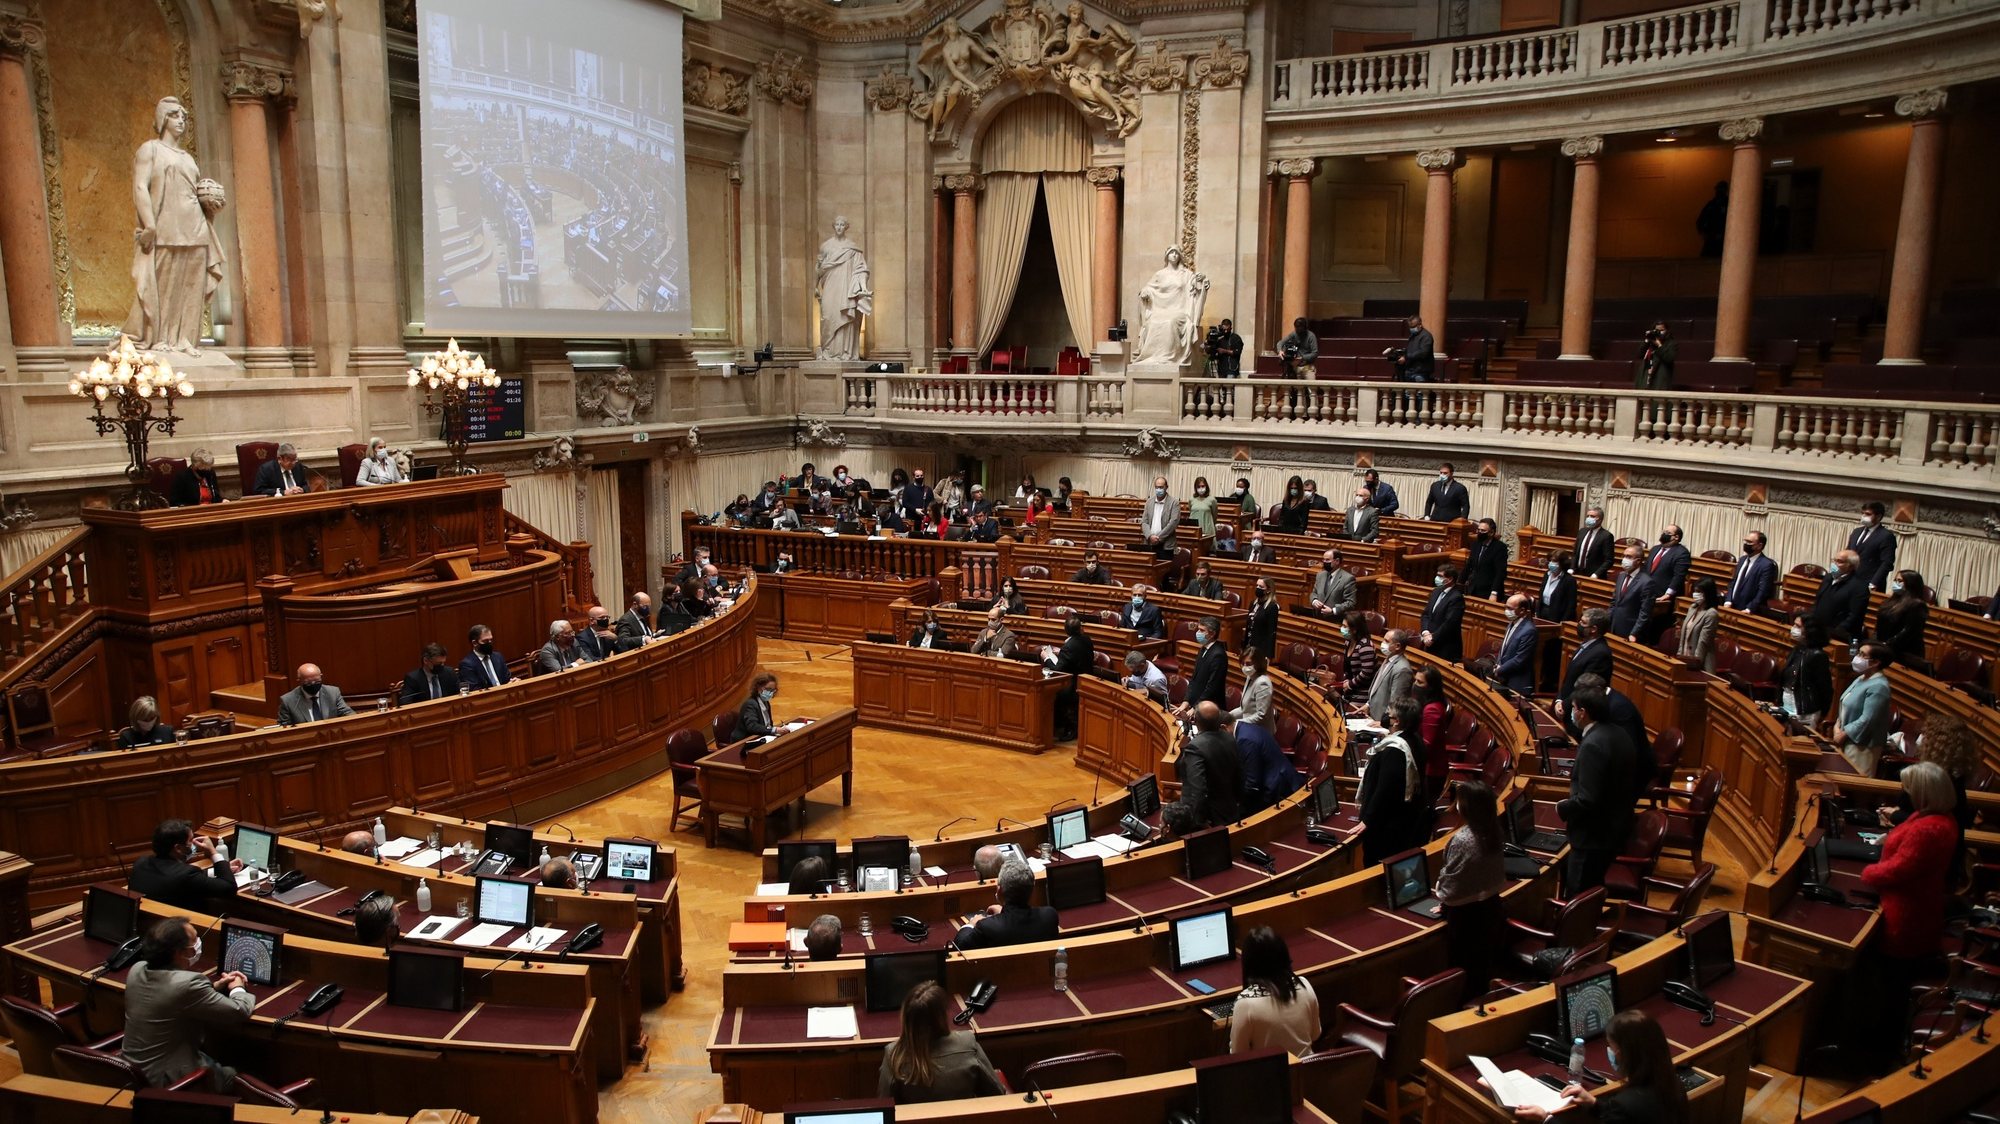 Deputados do Partido Socialista (PS) votam a favor do Orçamento do Estado 2021 (OE2021), na Assembleia da República, em Lisboa, 26 de novembro de 2020. O parlamento aprovou hoje a proposta bloquista de alteração ao Orçamento do Estado que anula a transferência de 476 milhões de euros do Fundo da Resolução destinada ao Novo Banco, com votos favoráveis do PSD, BE, PCP e PAN. MANUEL DE ALMEIDA/LUSA